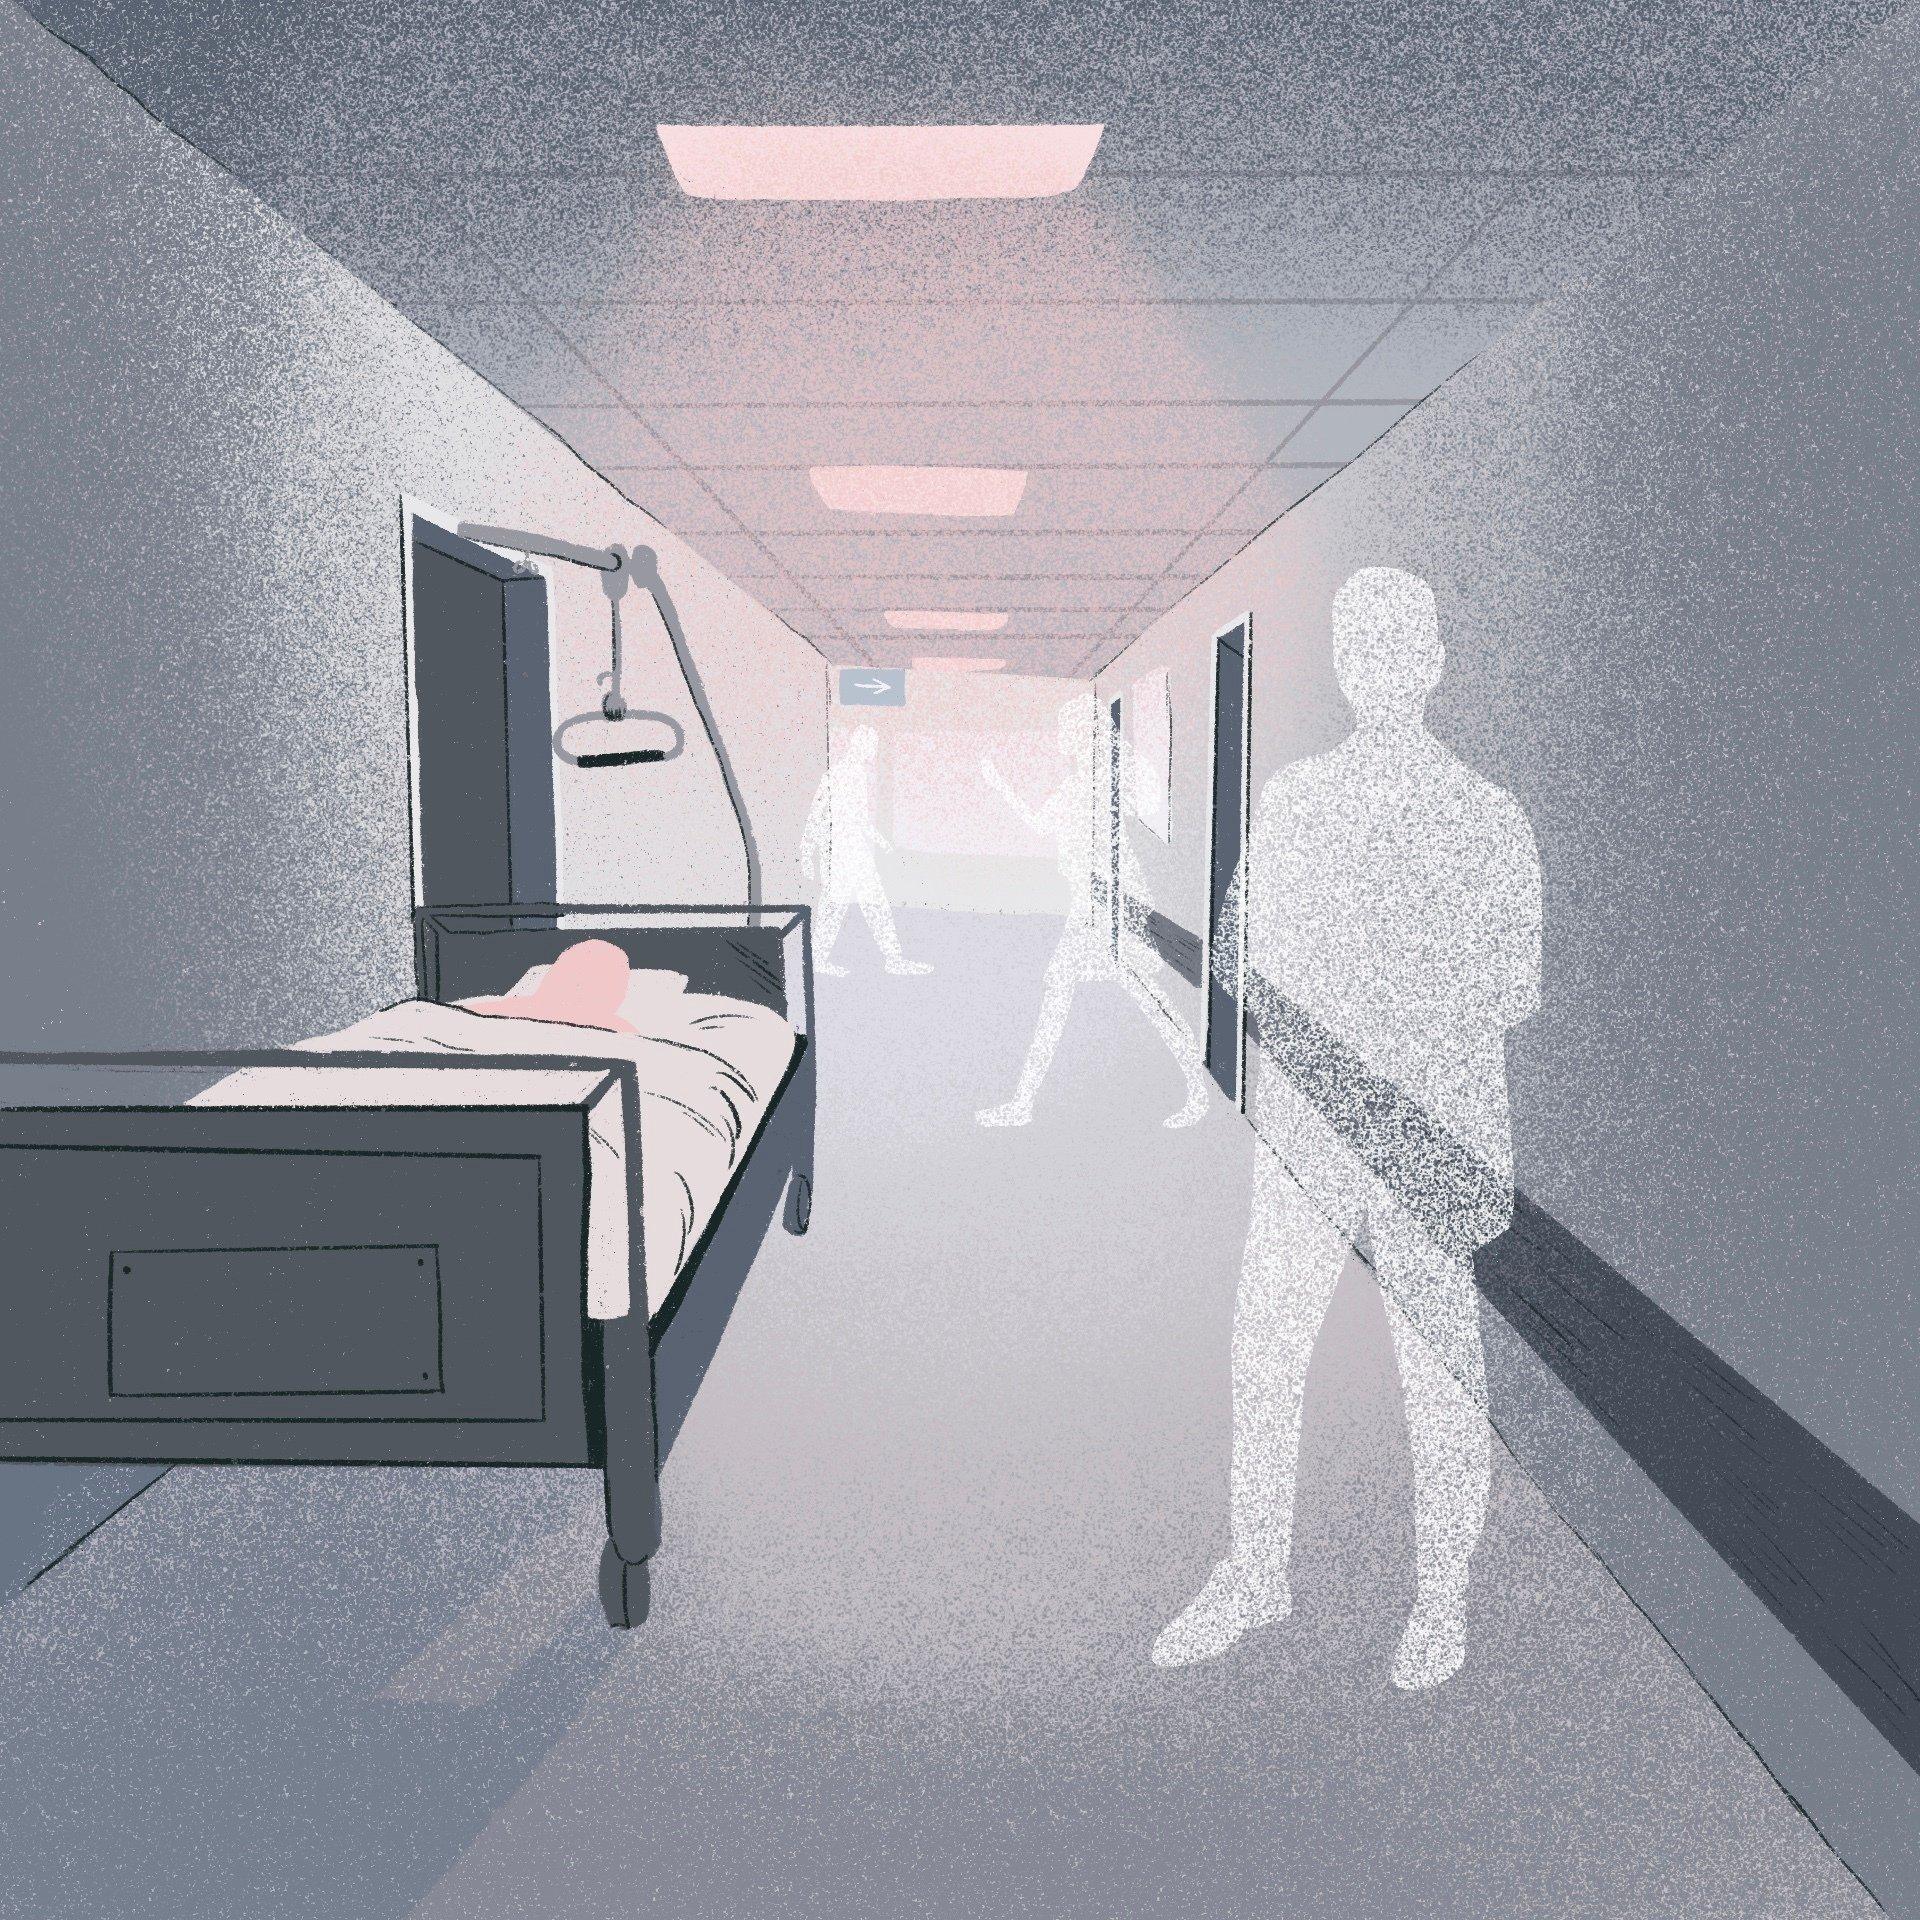 rysunek przedstawiający postacie i łóżko na szpitalnym korytarzu